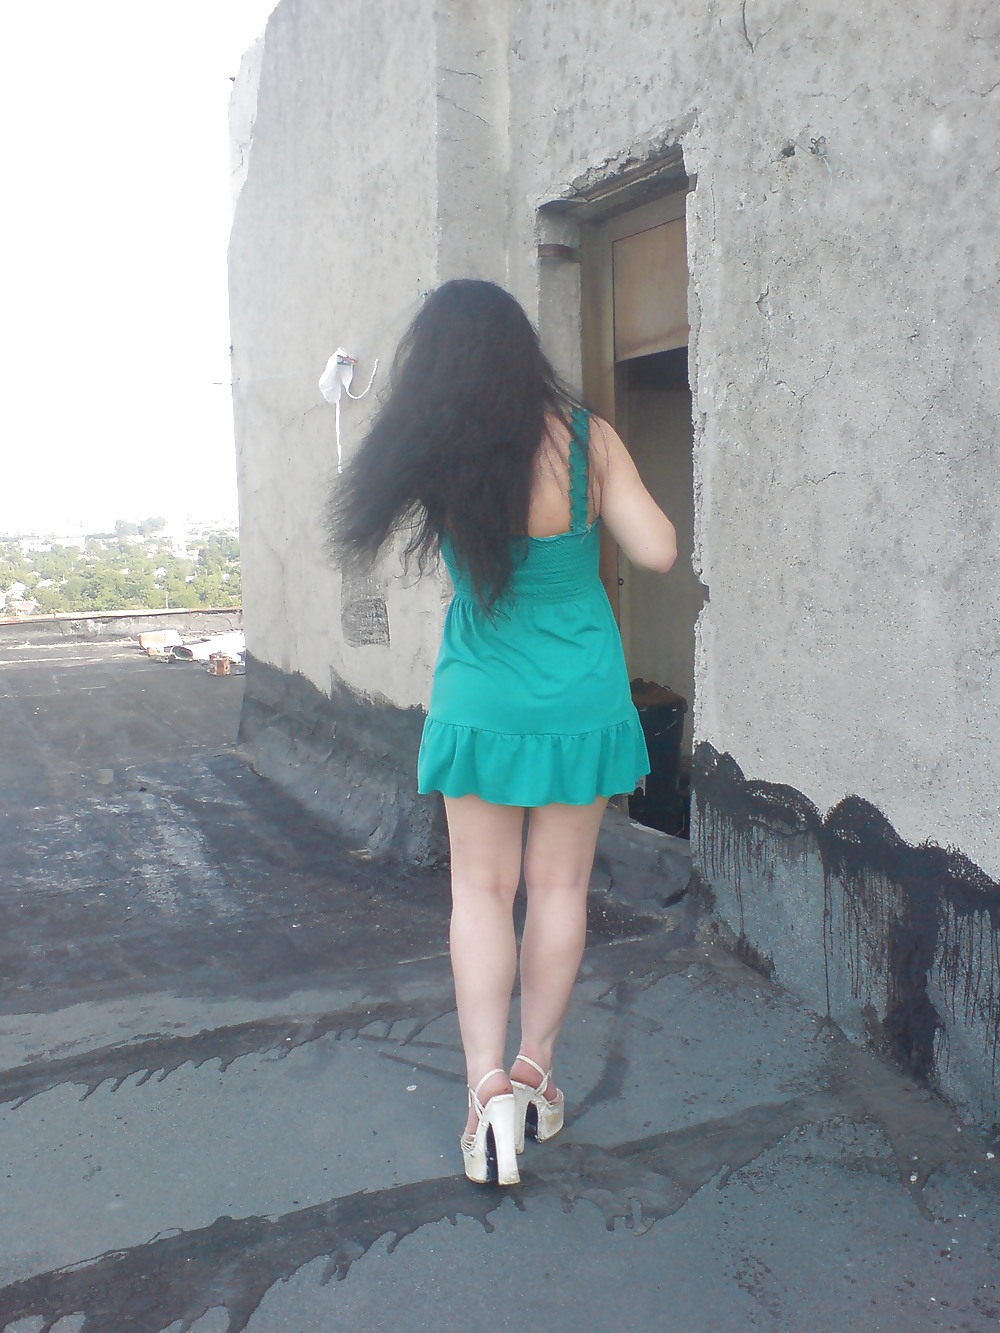 Skirt spy girl building romanian -sus pe bloc la un gratar #22024042